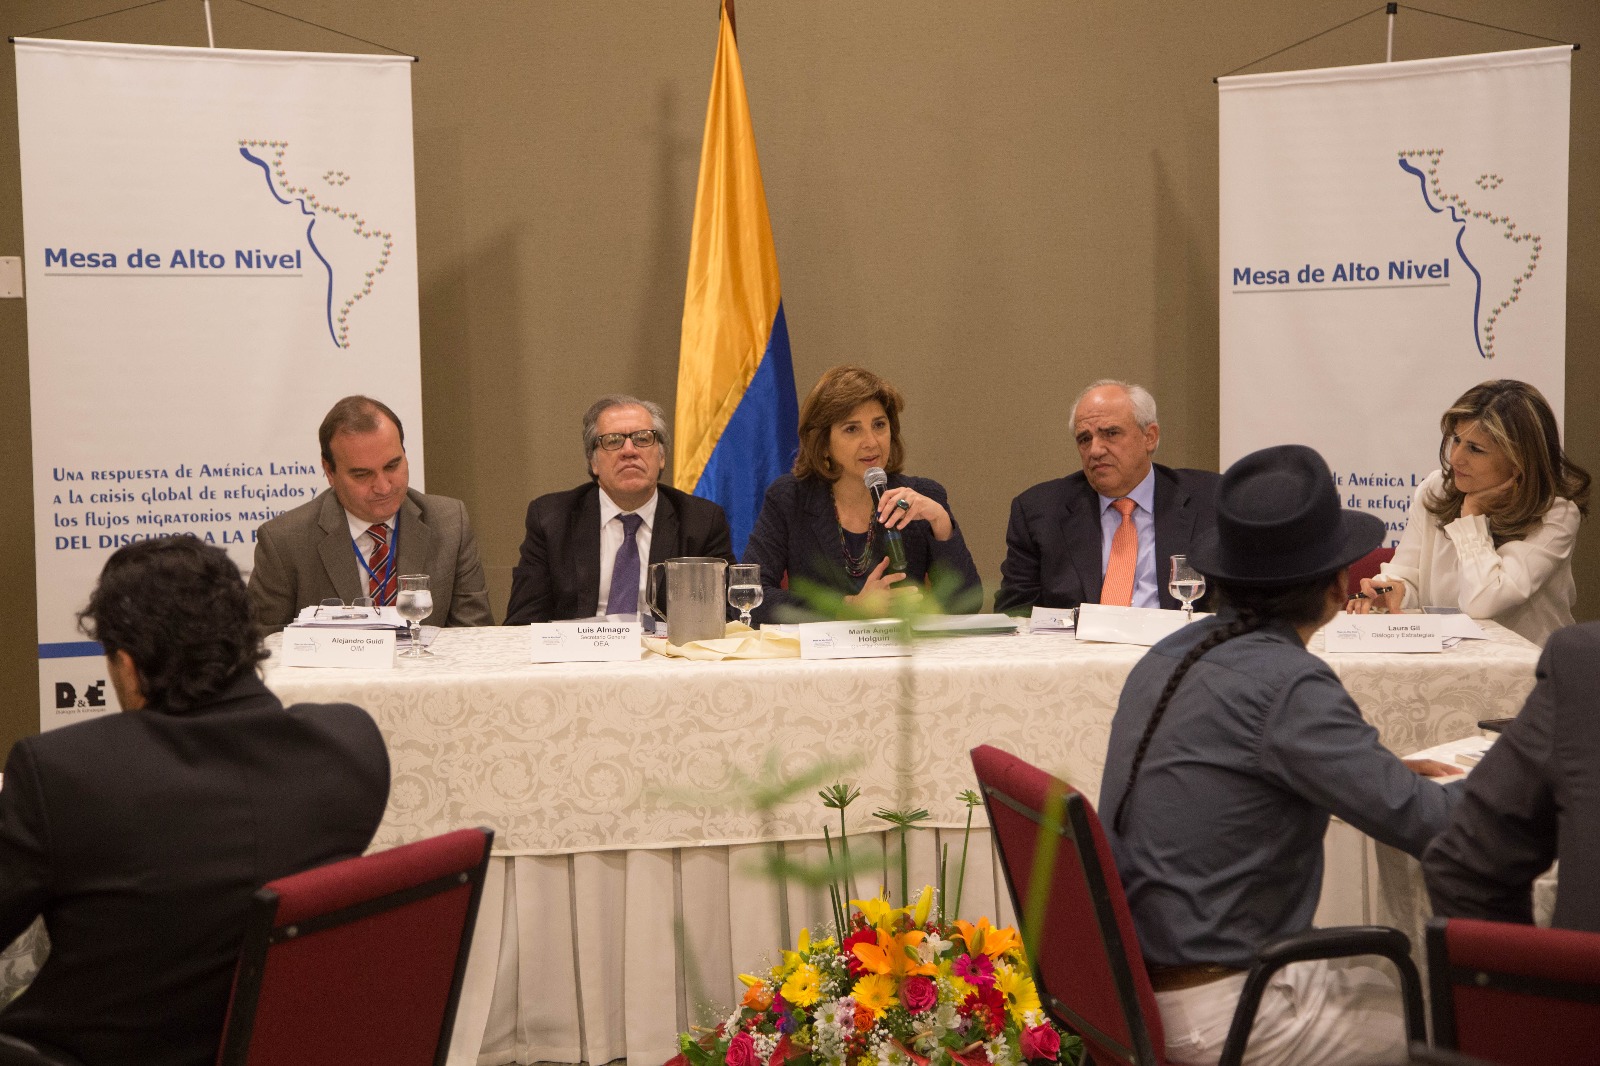 Canciller María Ángela Holguín participó en la Mesa de Alto Nivel: Una respuesta de América Latina y el Caribe a la crisis global de refugiados  los flujos migratorios masivos